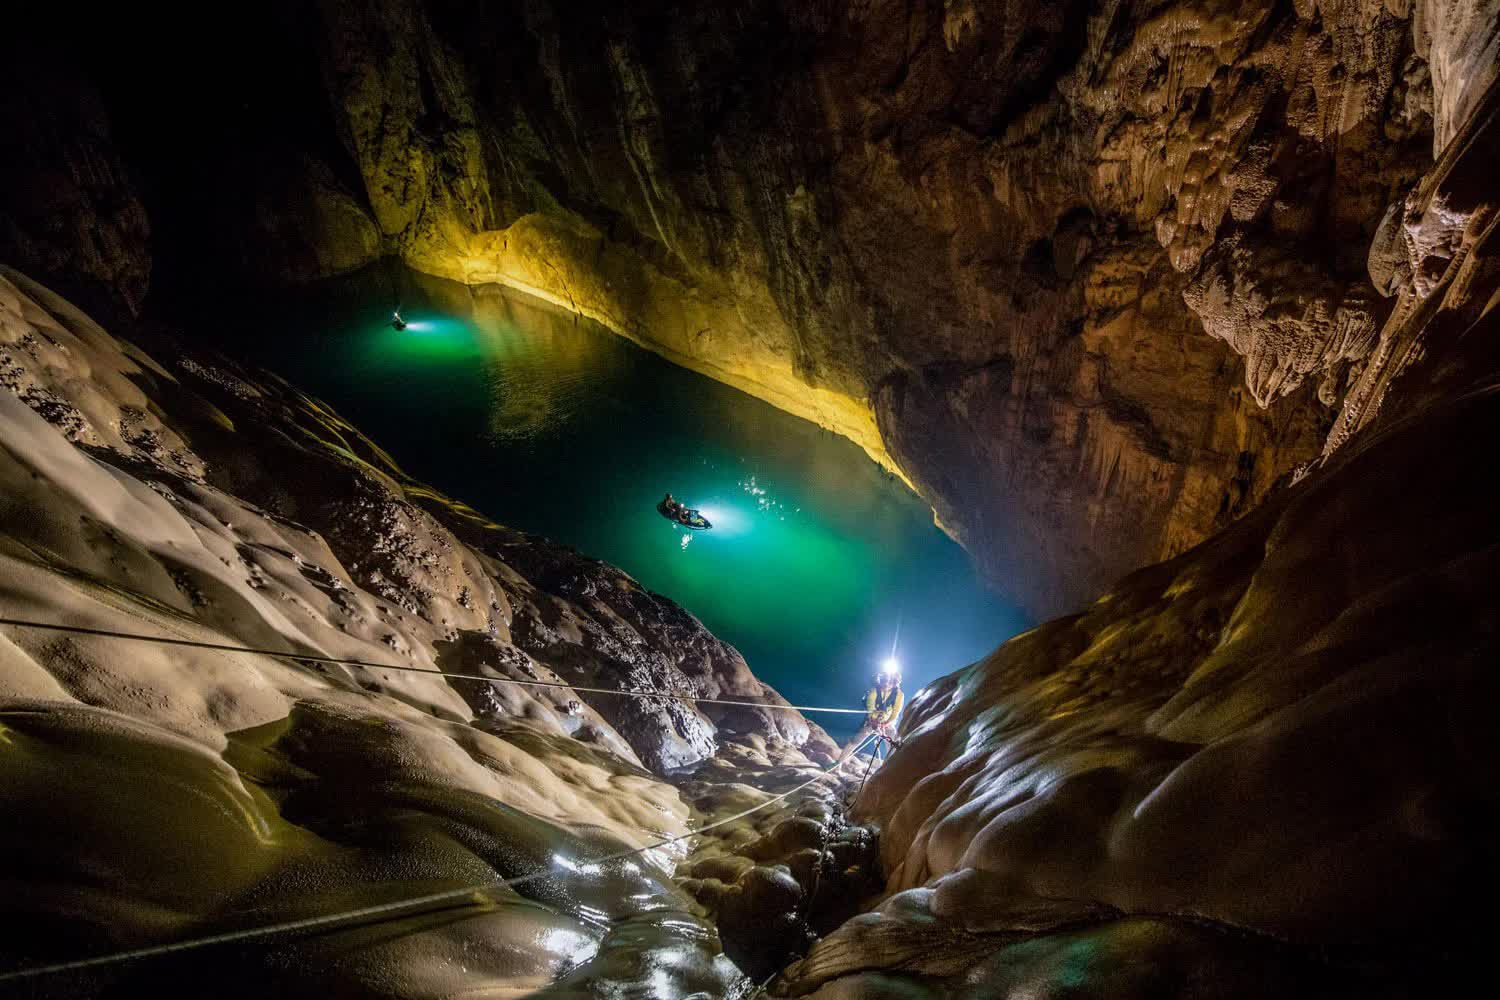 Phát hiện hang động mới “xẻ đôi” rừng Trường Sơn ở Quảng Bình, các tín đồ mê thám hiểm không thể bỏ lỡ - Ảnh 7.